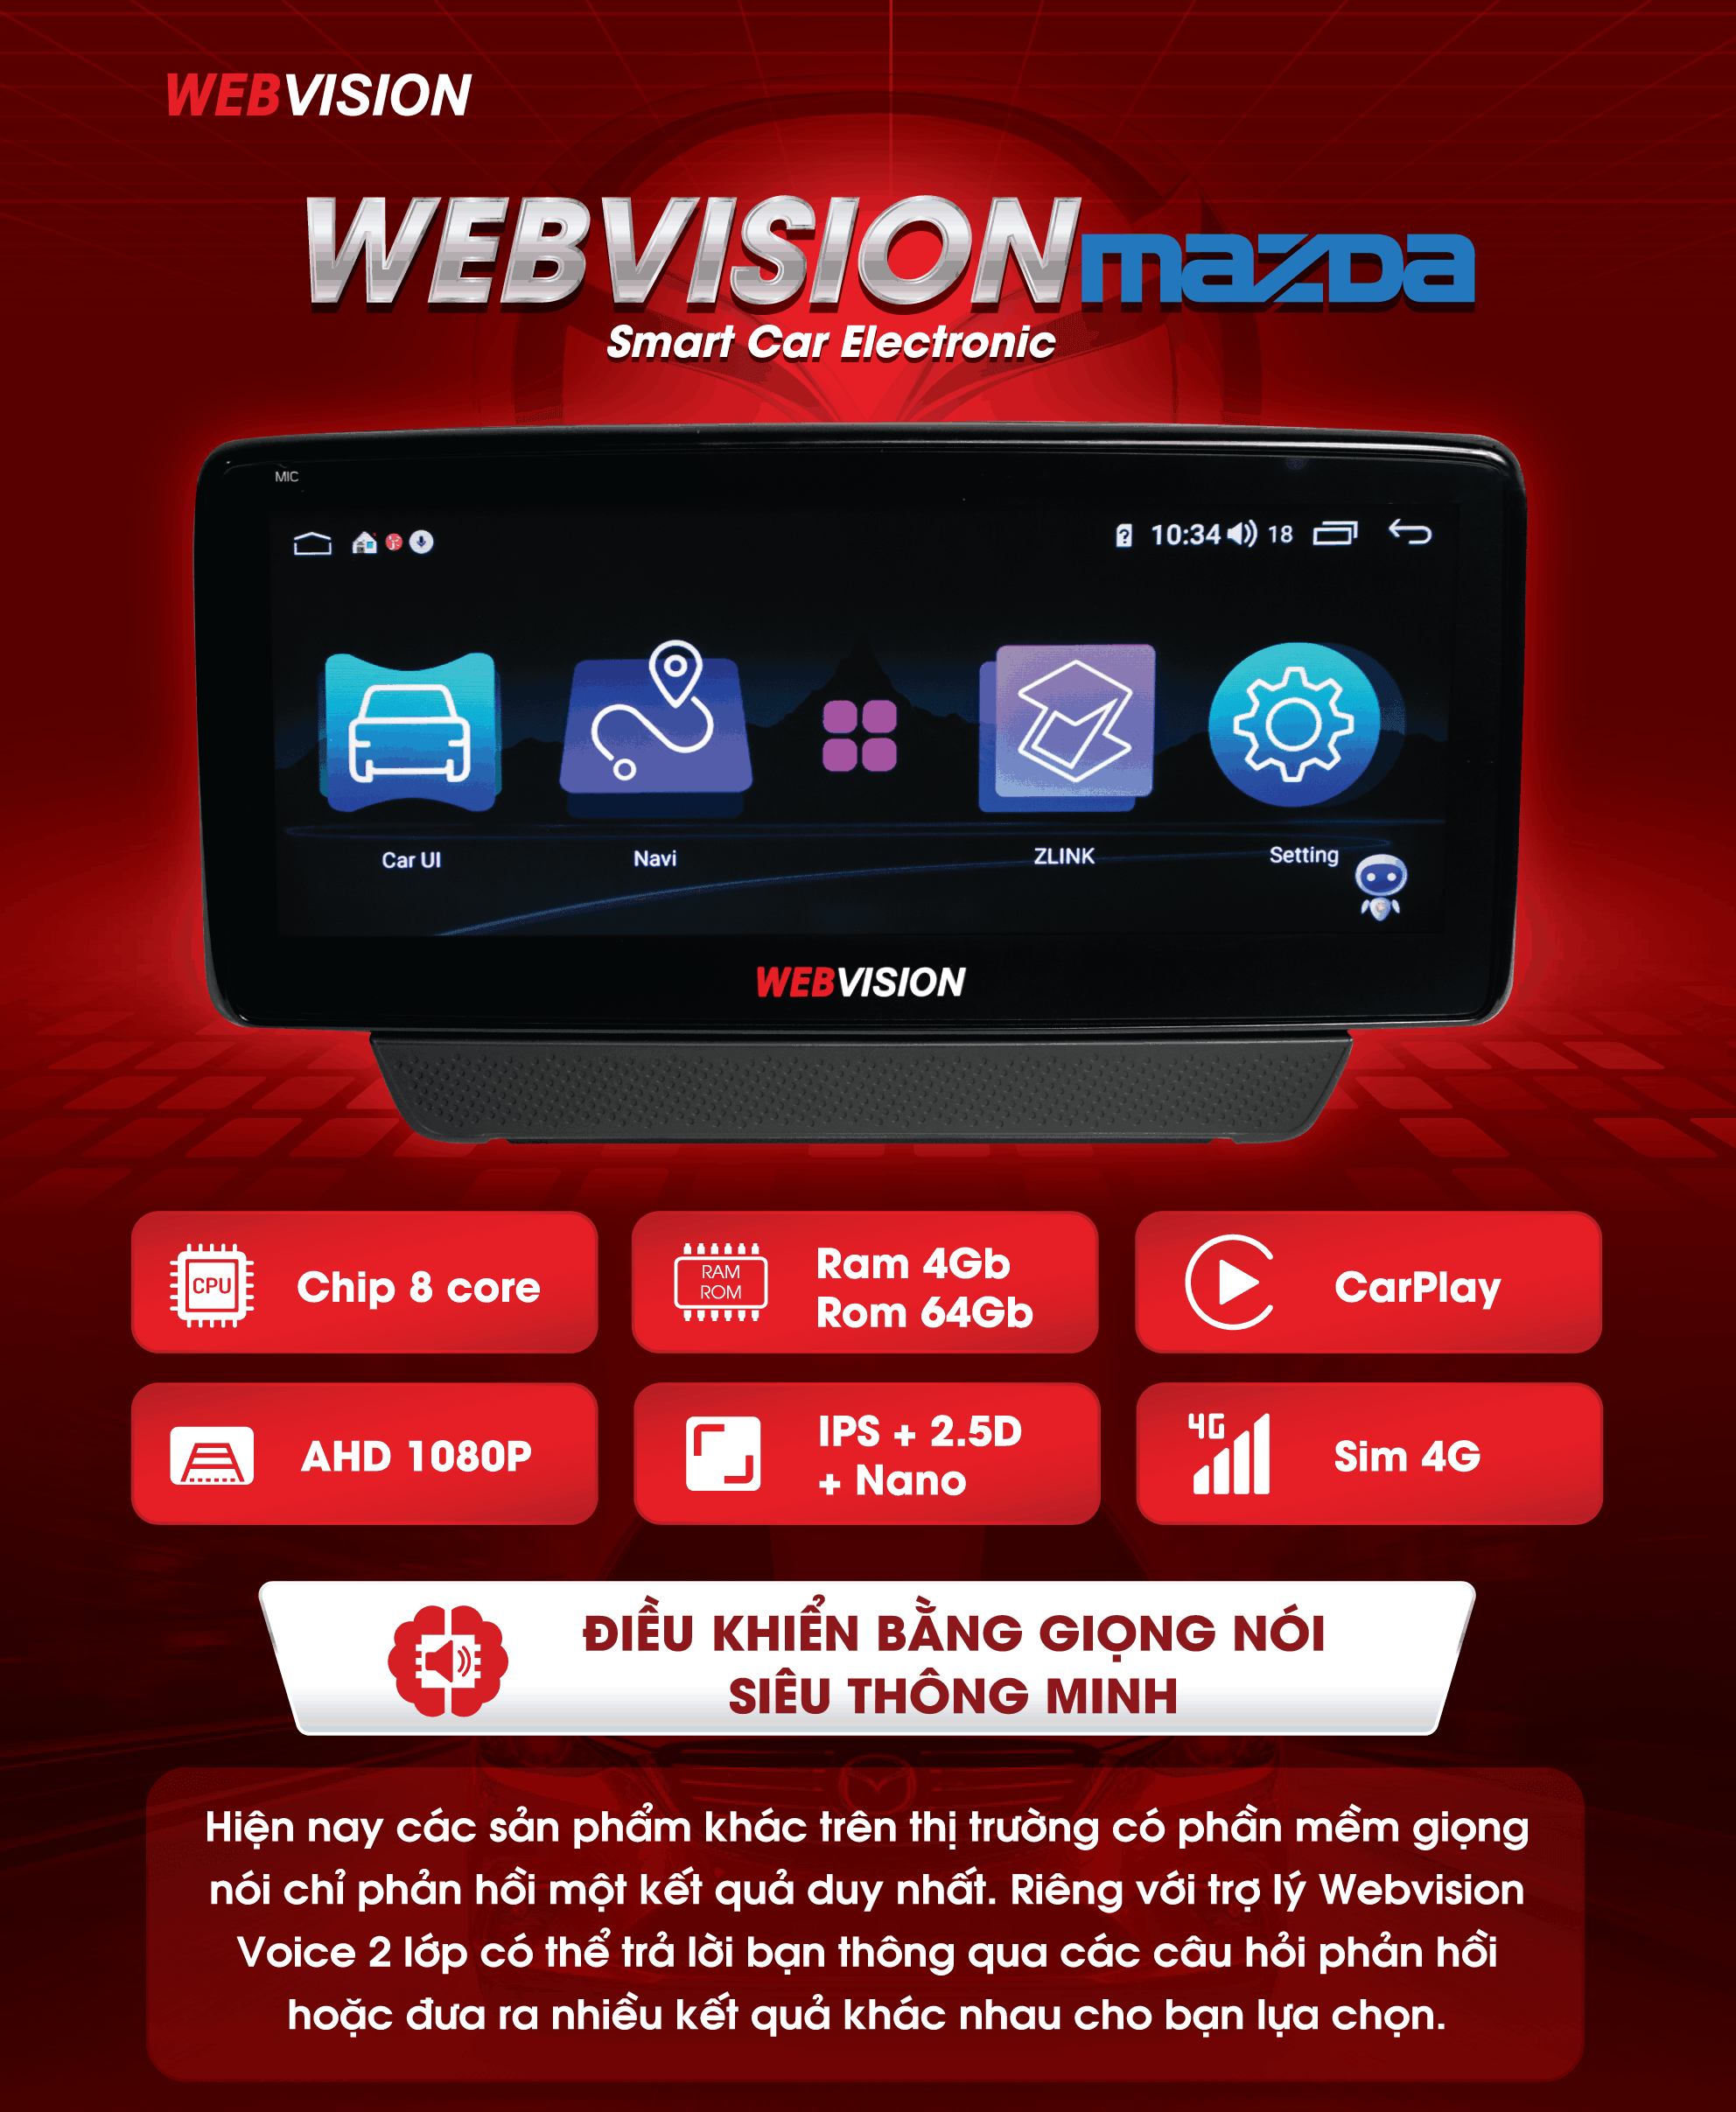 lắp đặt webvision mazda 6 chính hãng - giá tốt tại thành nam gps